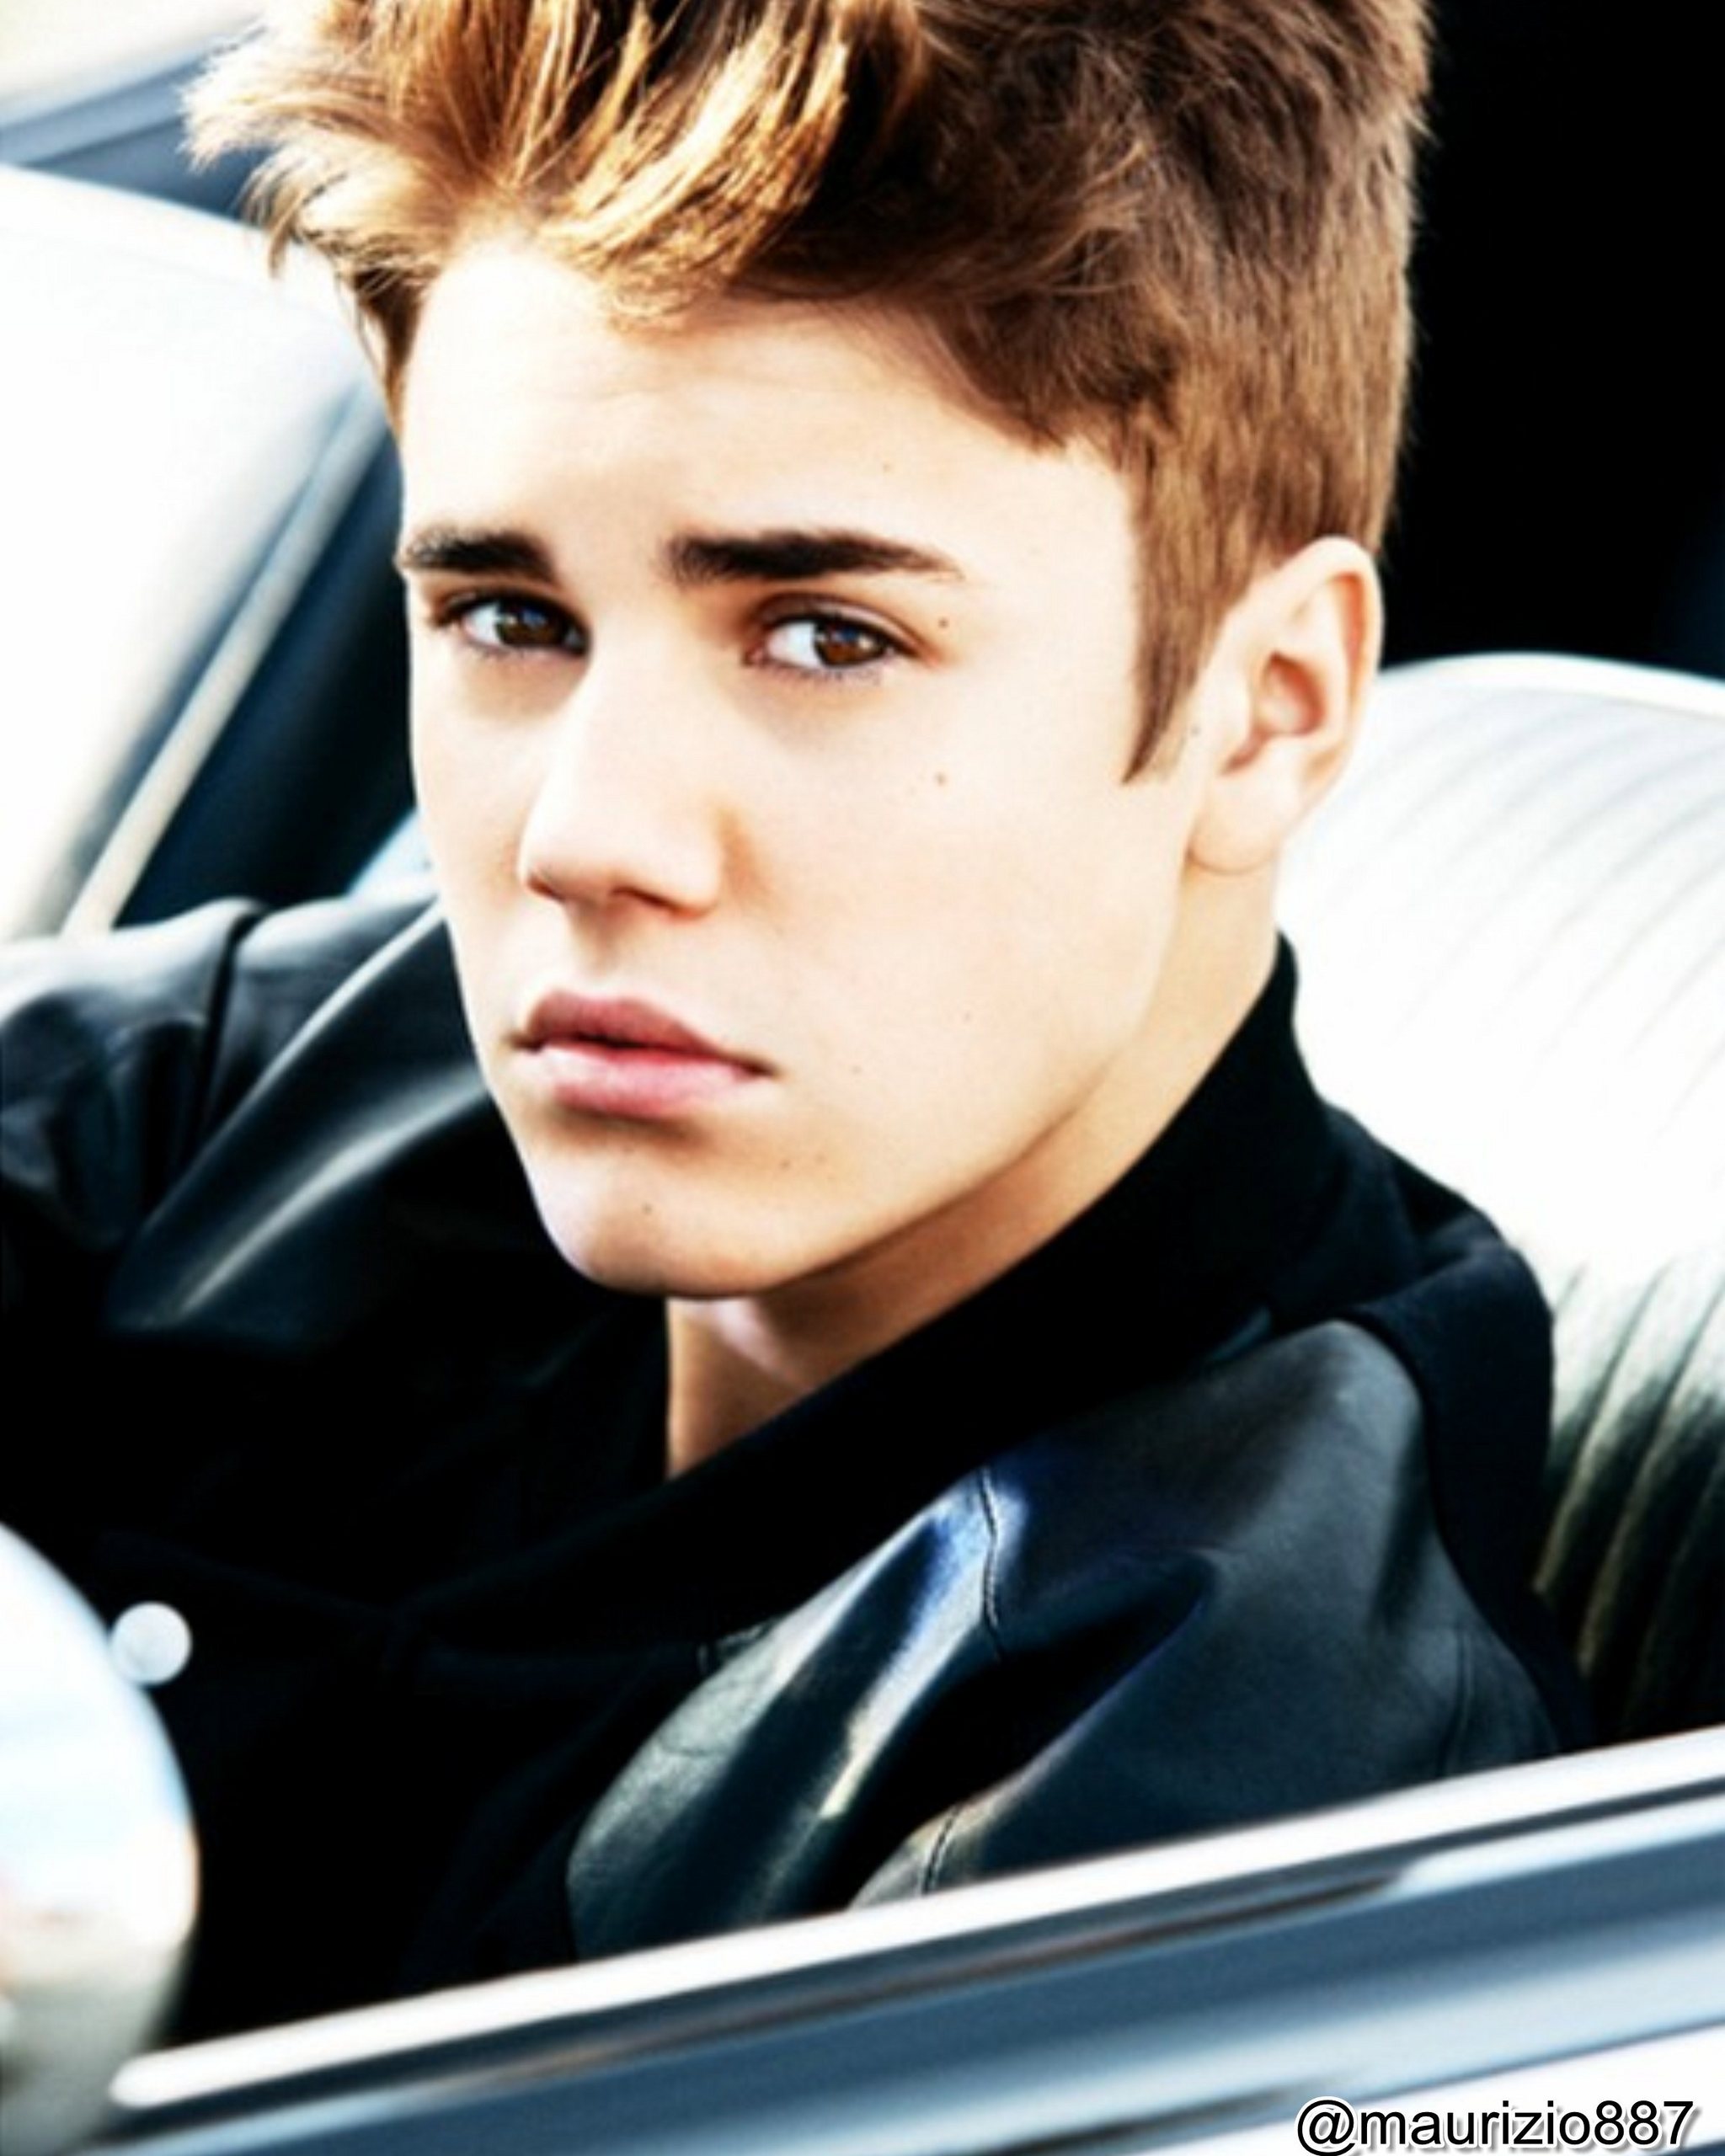 Justin Bieber Wallpapers Believe 2012